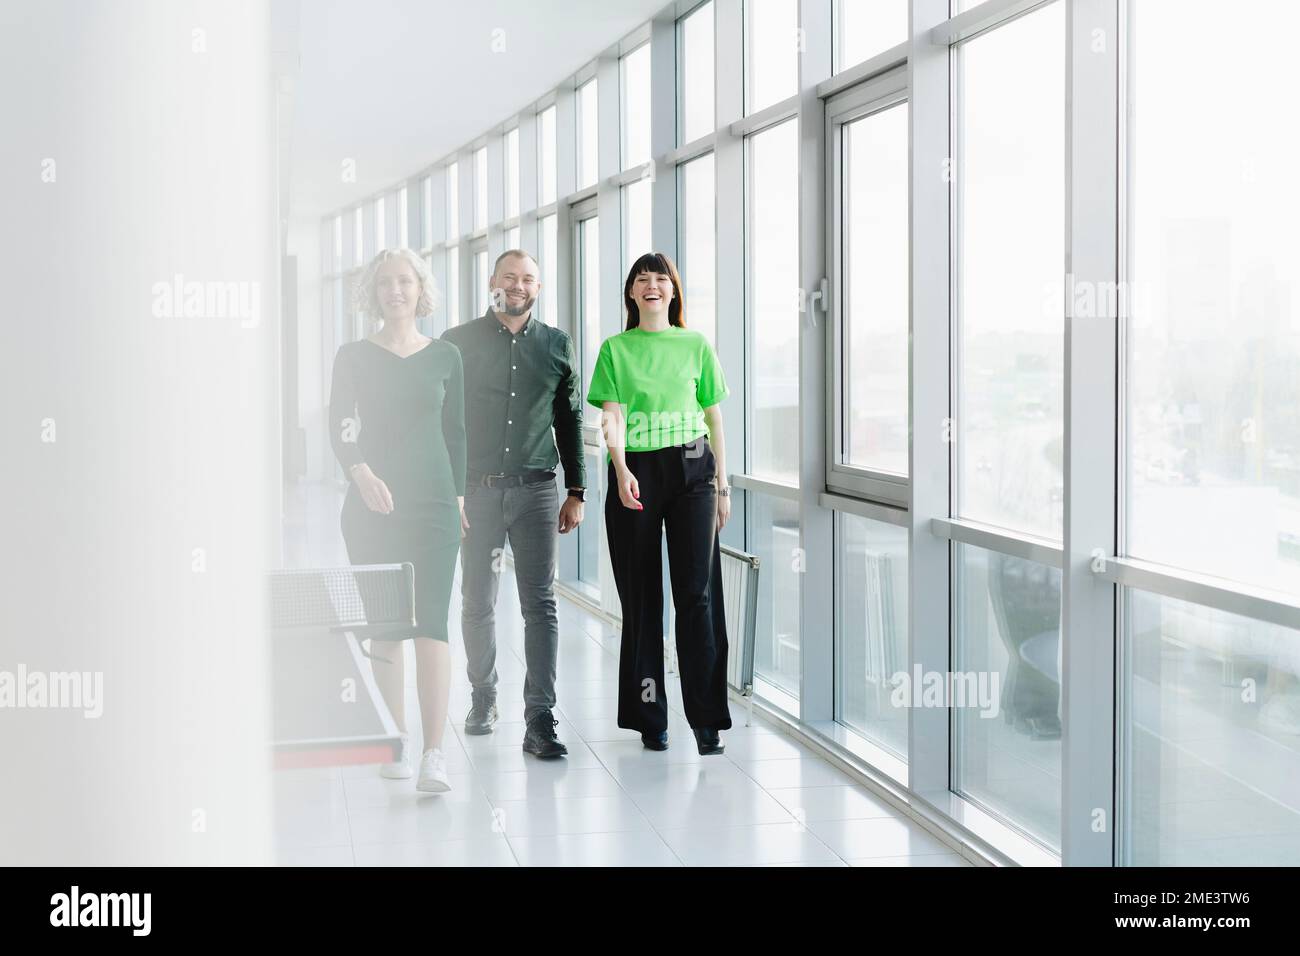 Drei glückliche Geschäftsleute in grüner Kleidung, die auf dem Büroboden herumlaufen Stockfoto